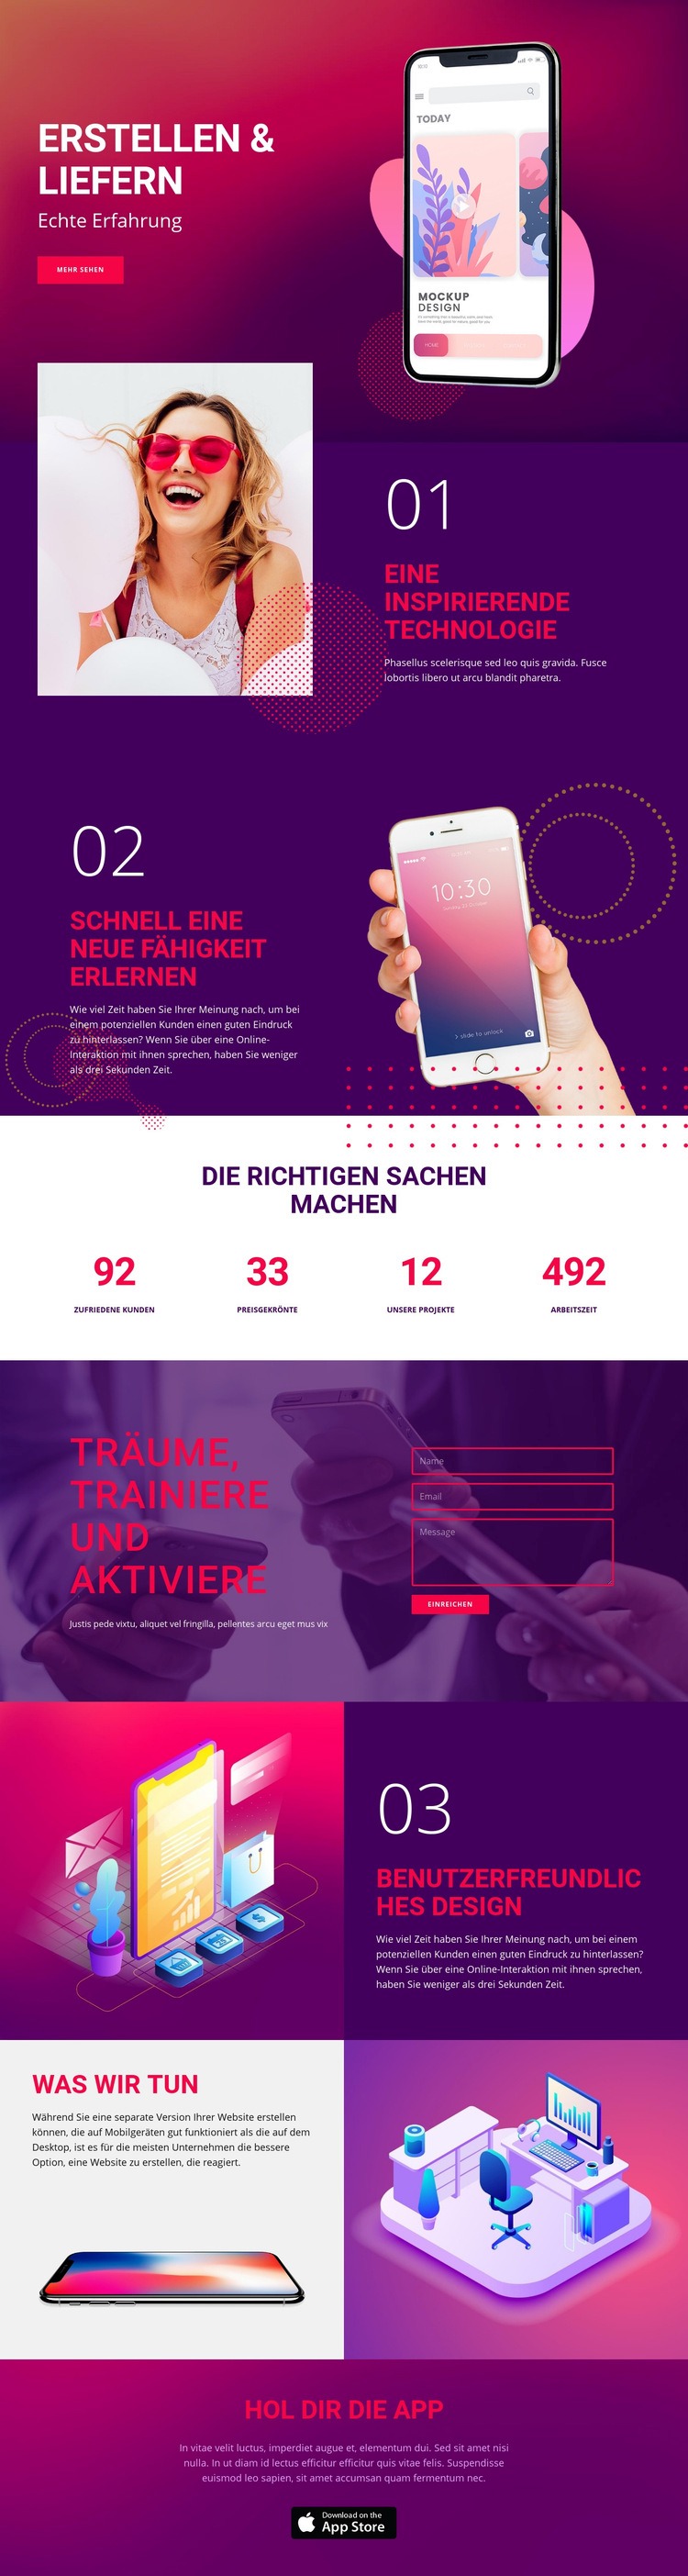 Liefertechnik Website design